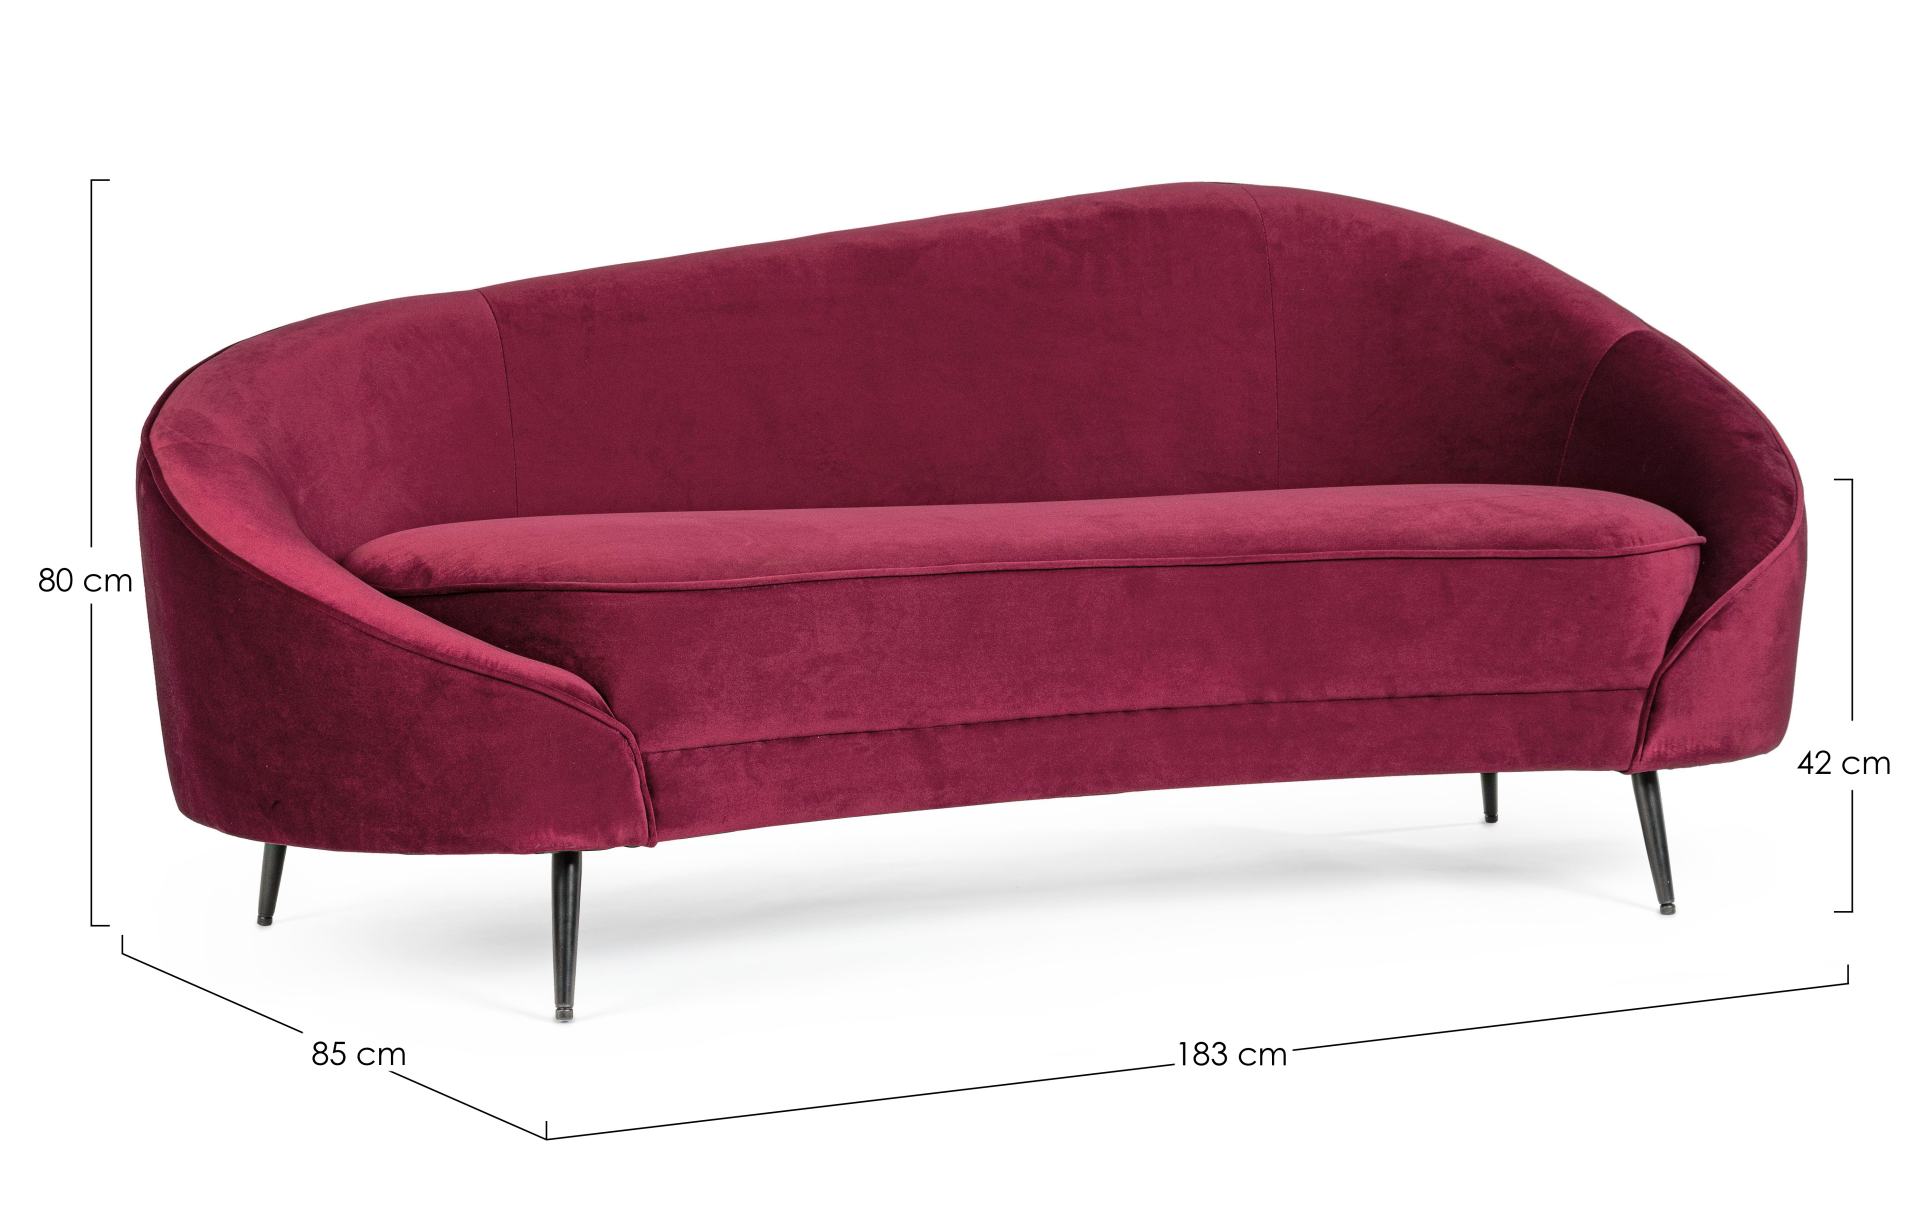 Das Sofa Seraphin überzeugt mit seinem modernen Design. Gefertigt wurde es aus Stoff in Samt-Optik, welcher einen roten Farbton besitzt. Das Gestell ist aus Metall und hat eine schwarze Farbe. Das Sofa ist in der Ausführung als 2-Sitzer. Die Breite beträg